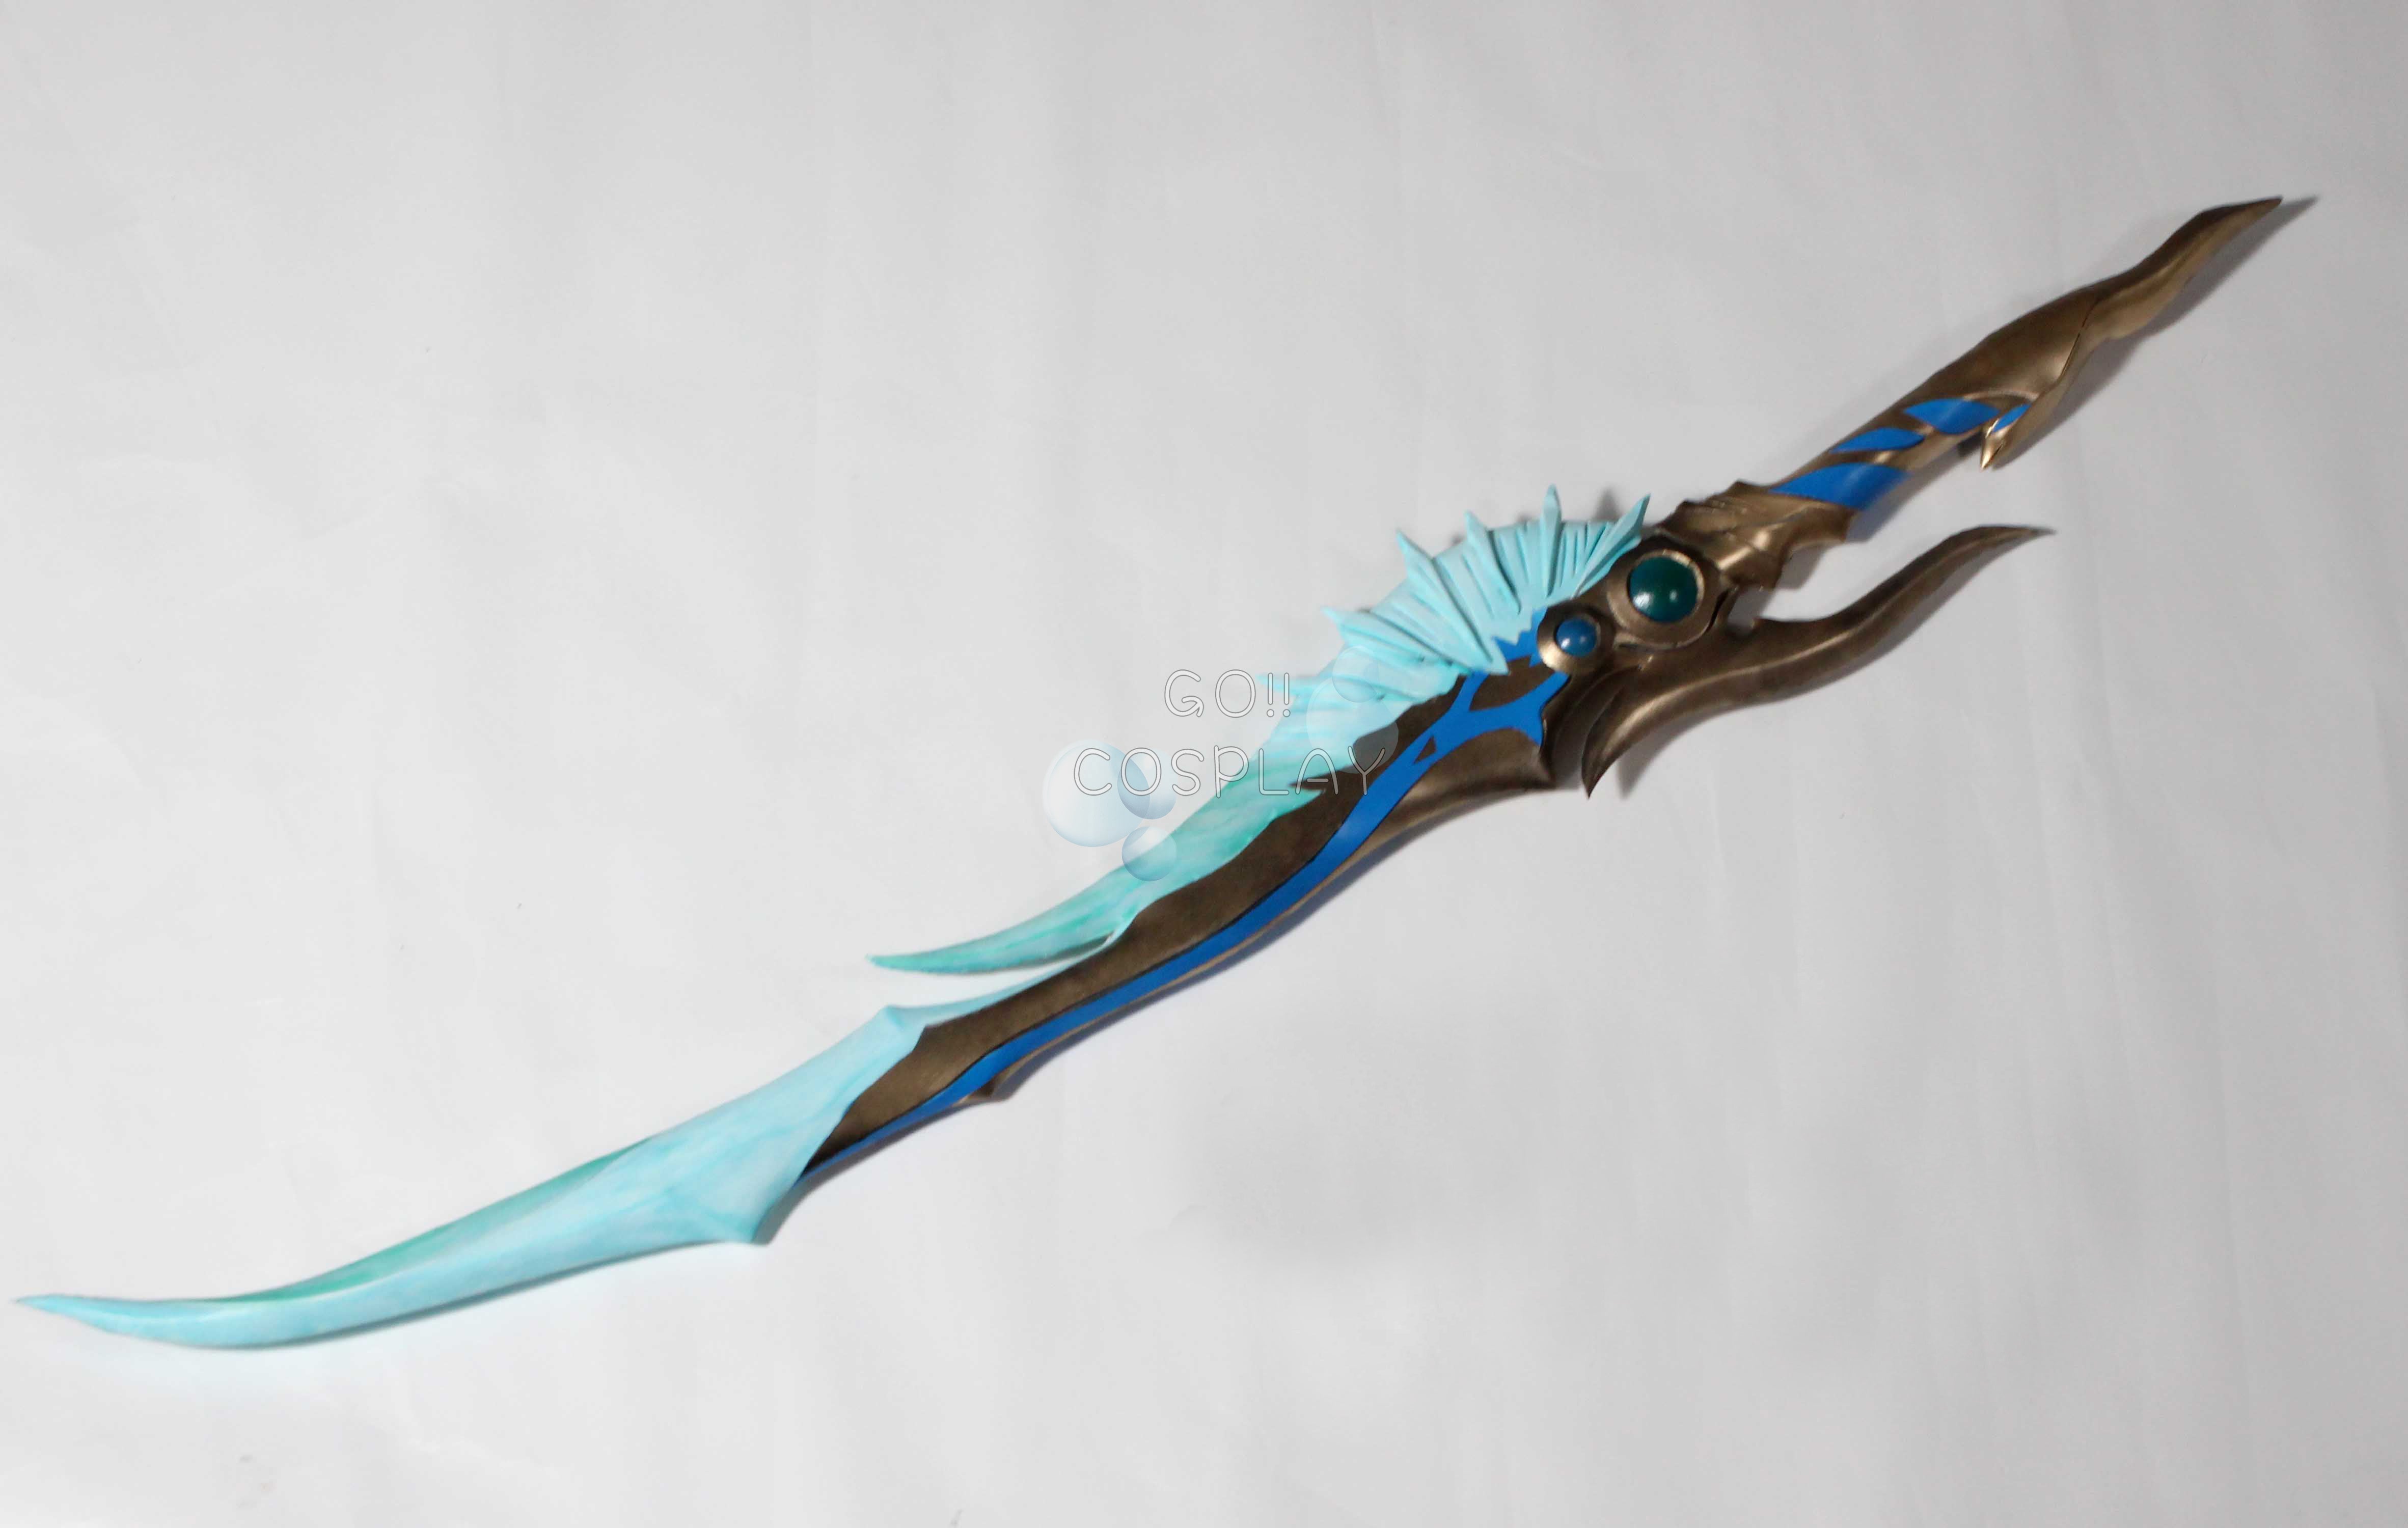 alastor sword replica